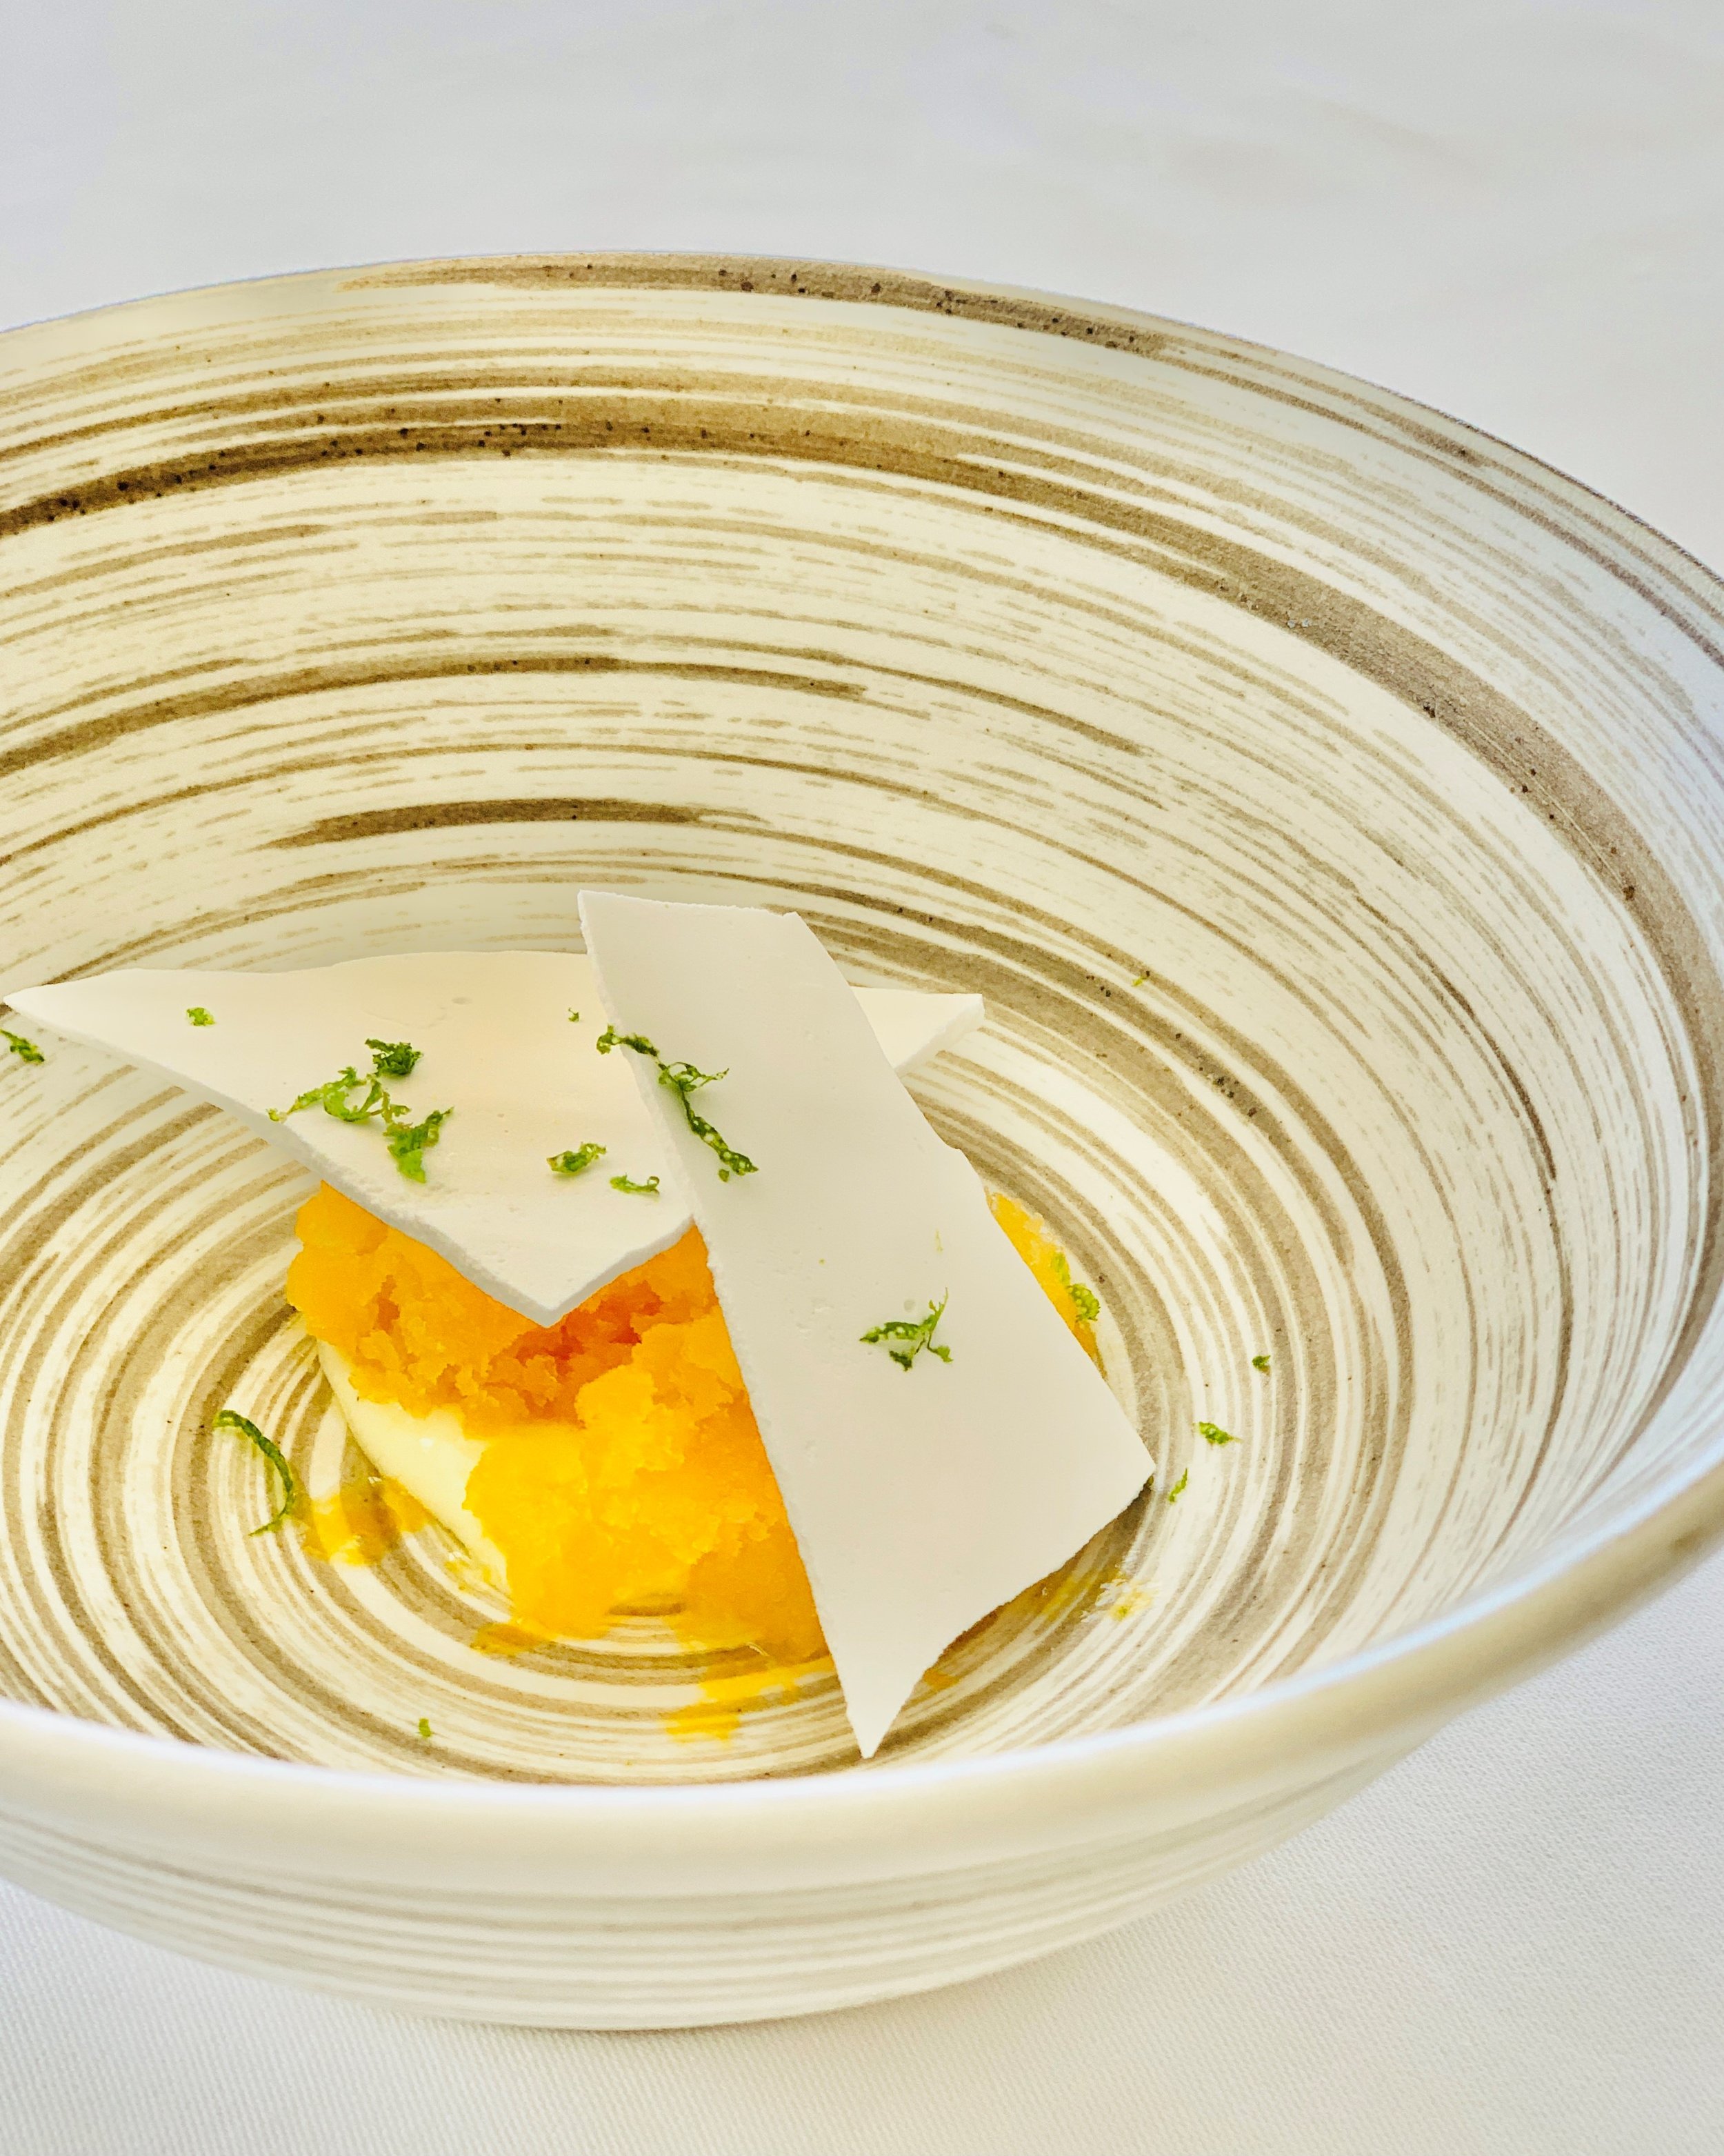  The Pavlova on The Kahala Grand Tasting menu features lilikoi granite with a crispy meringue and vanilla custard. 